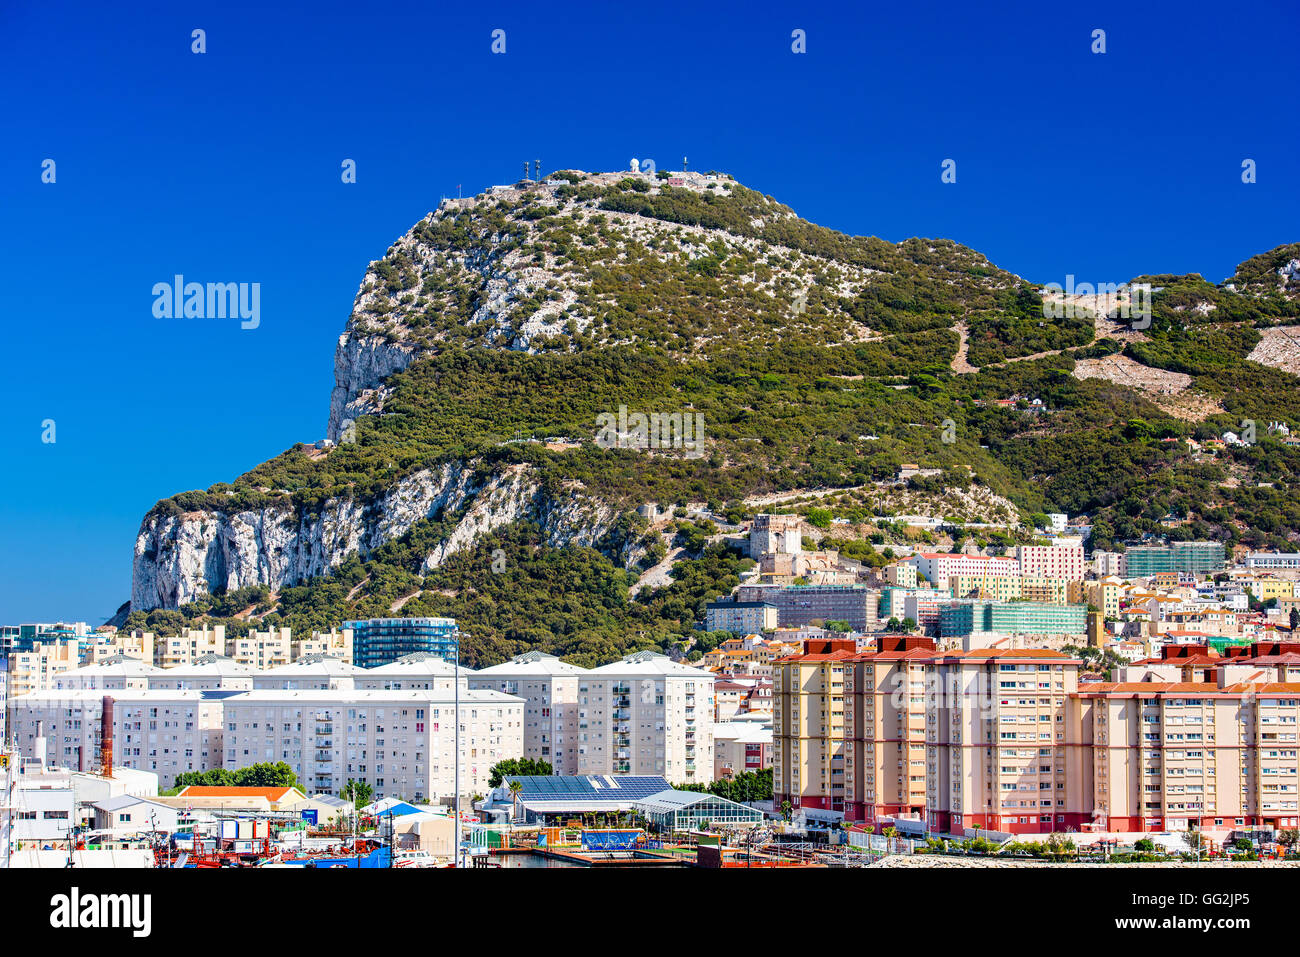 Le rocher de Gibraltar, territoire britannique d'outre-mer. Banque D'Images